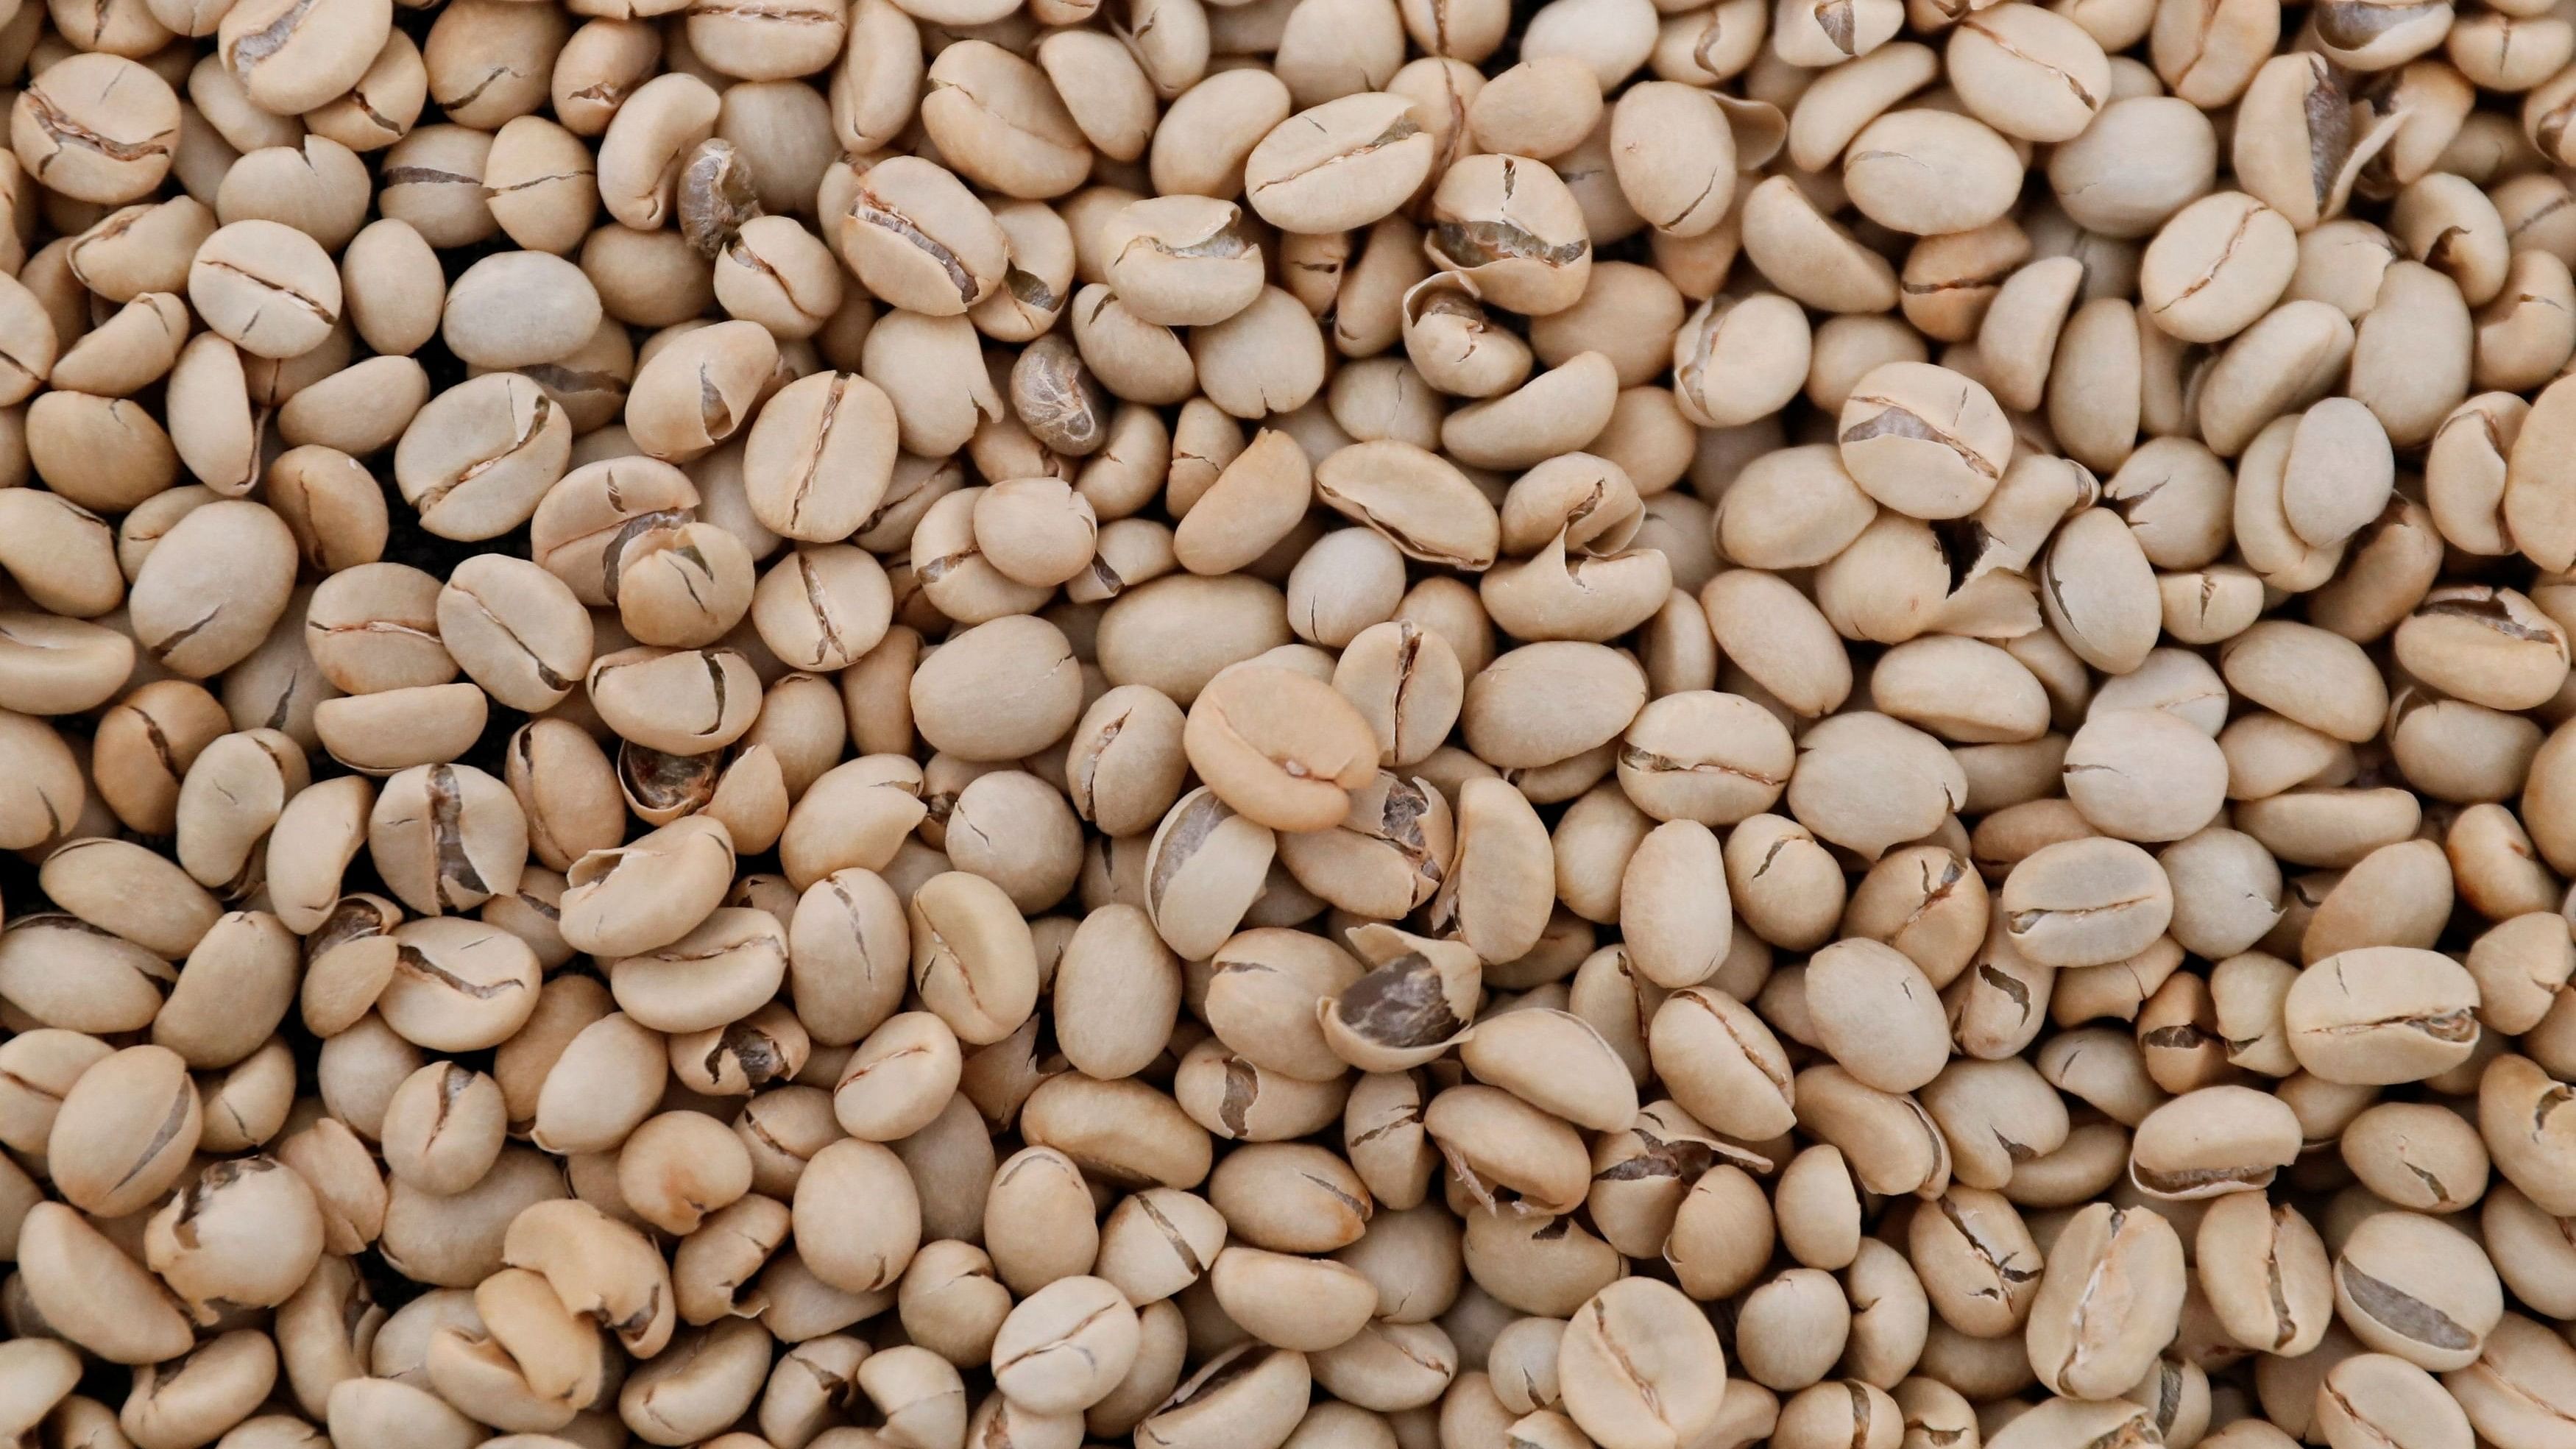 <div class="paragraphs"><p>Representative image of coffee beans.</p></div>